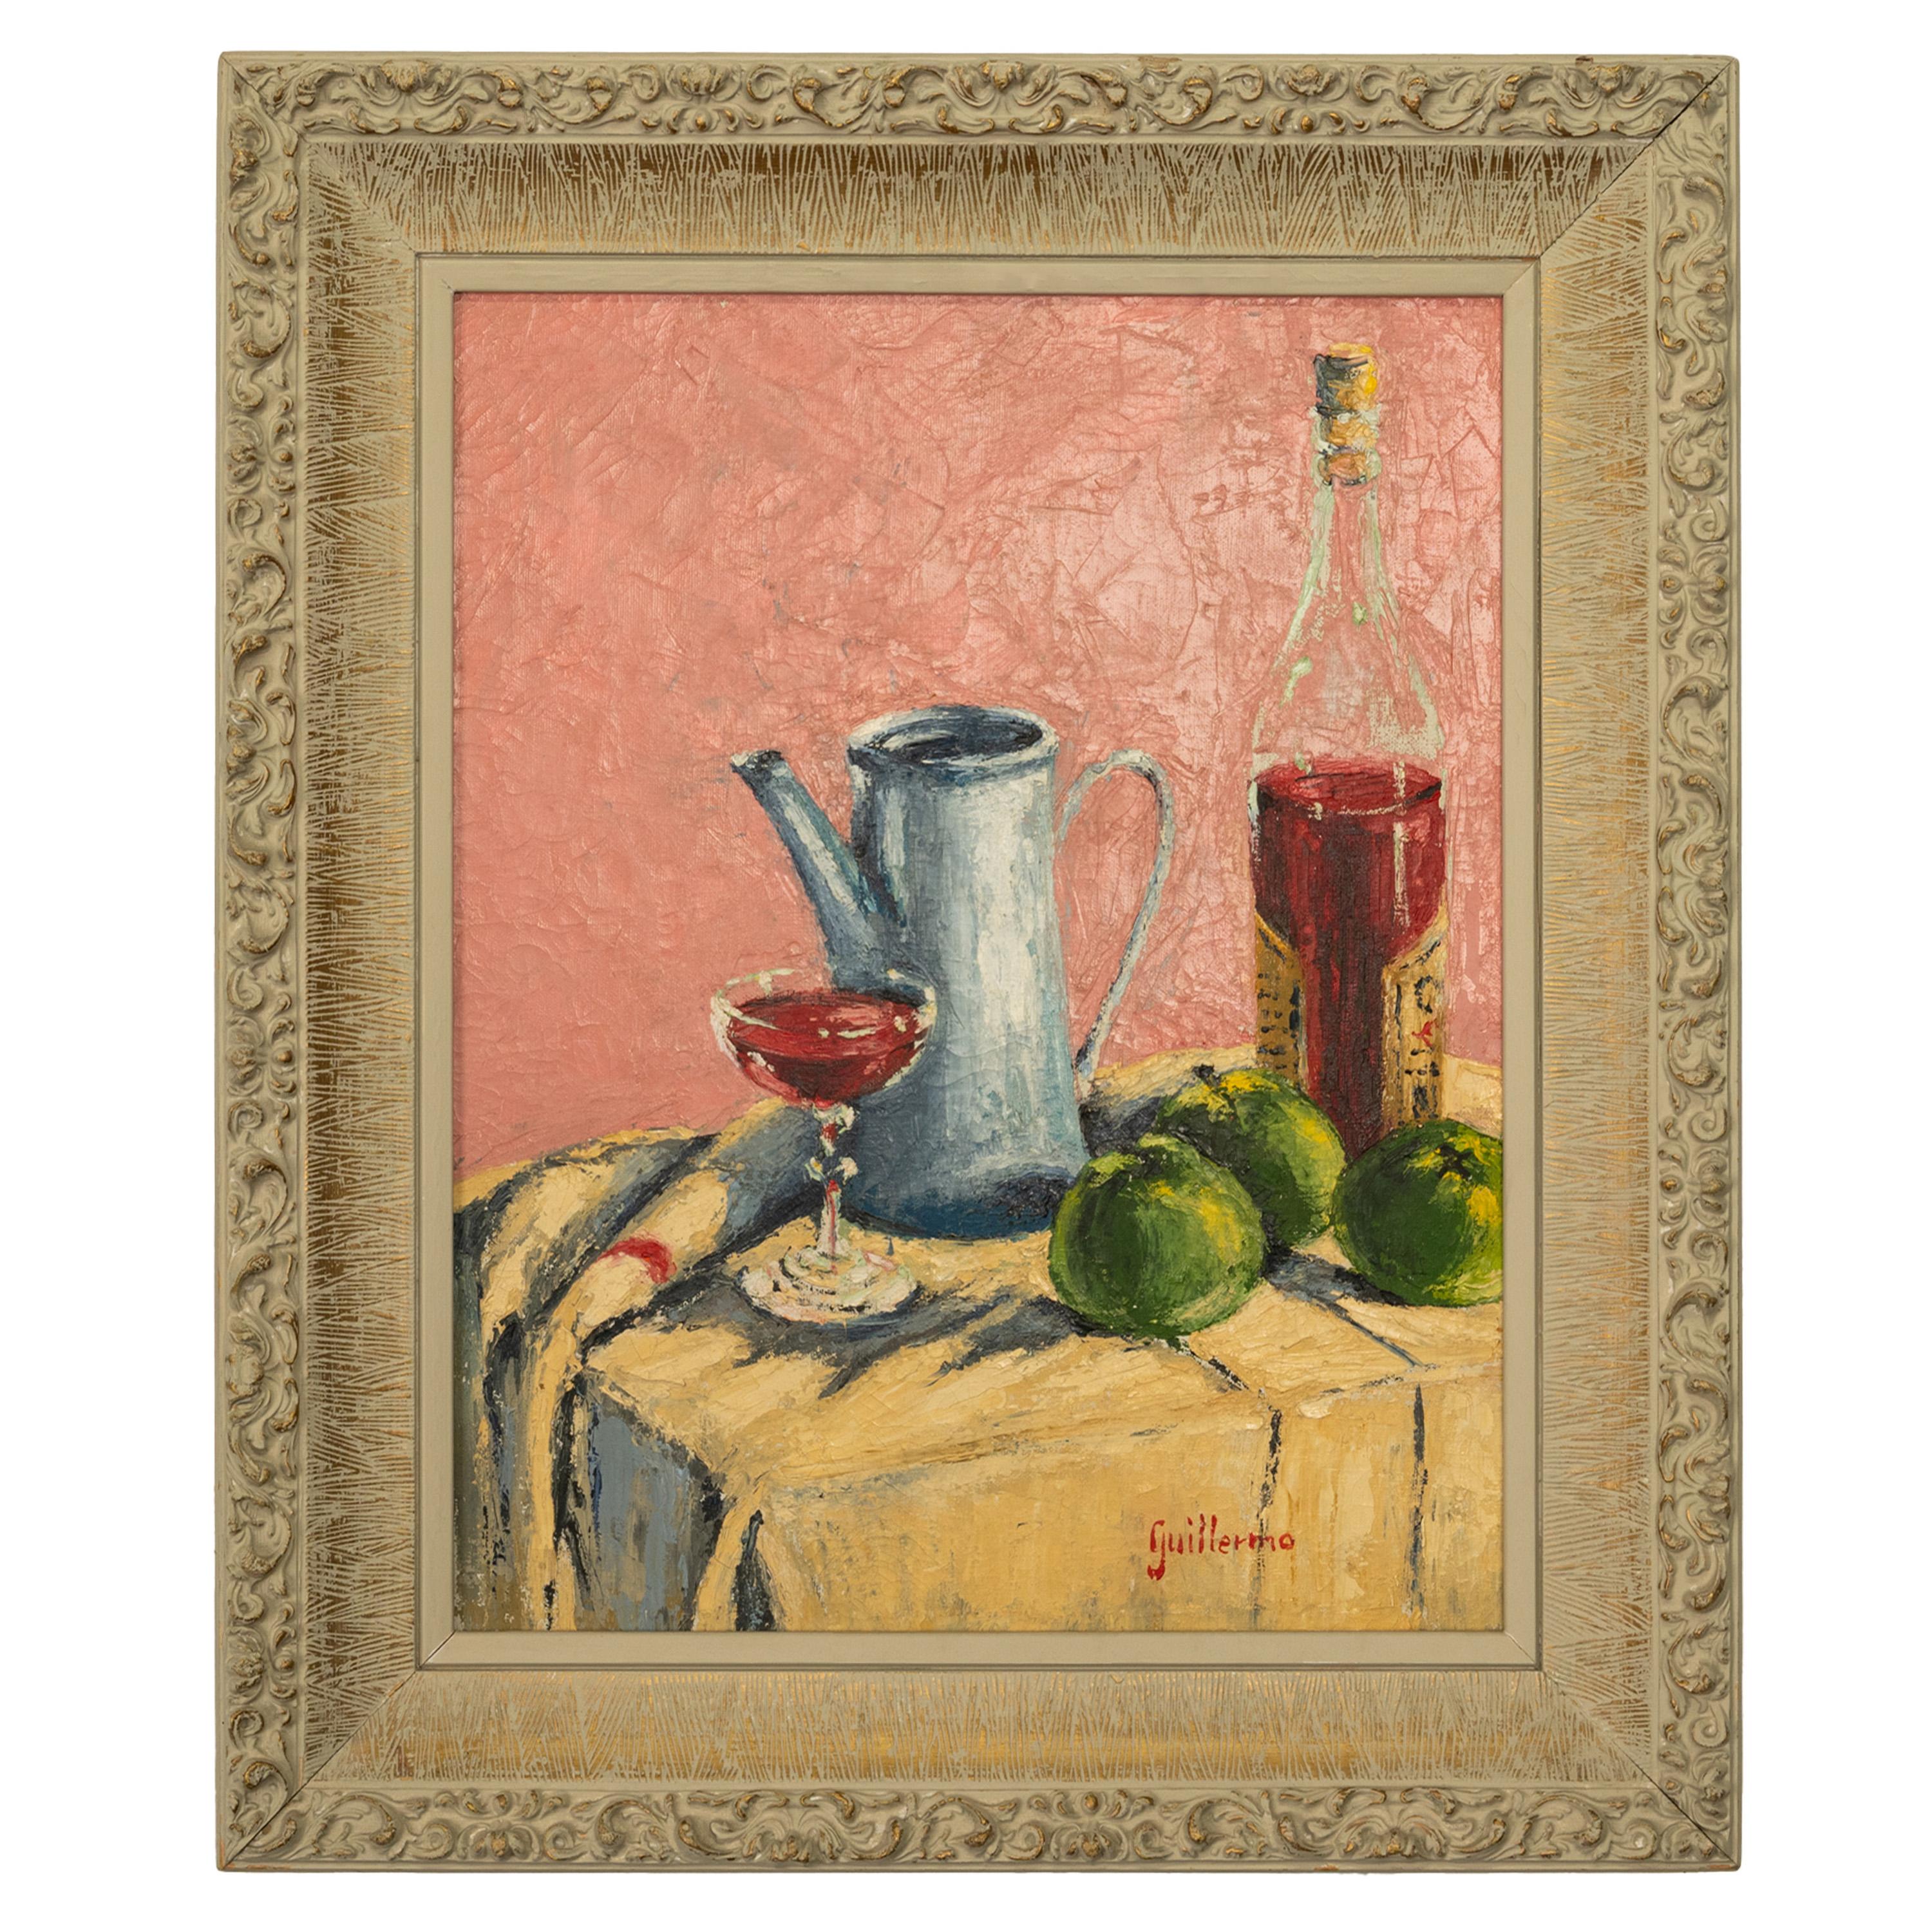 Still-Life Painting Juan Guillermo -  Nature morte moderniste espagnole abstraite impressionniste sur toile à l'huile 1950 